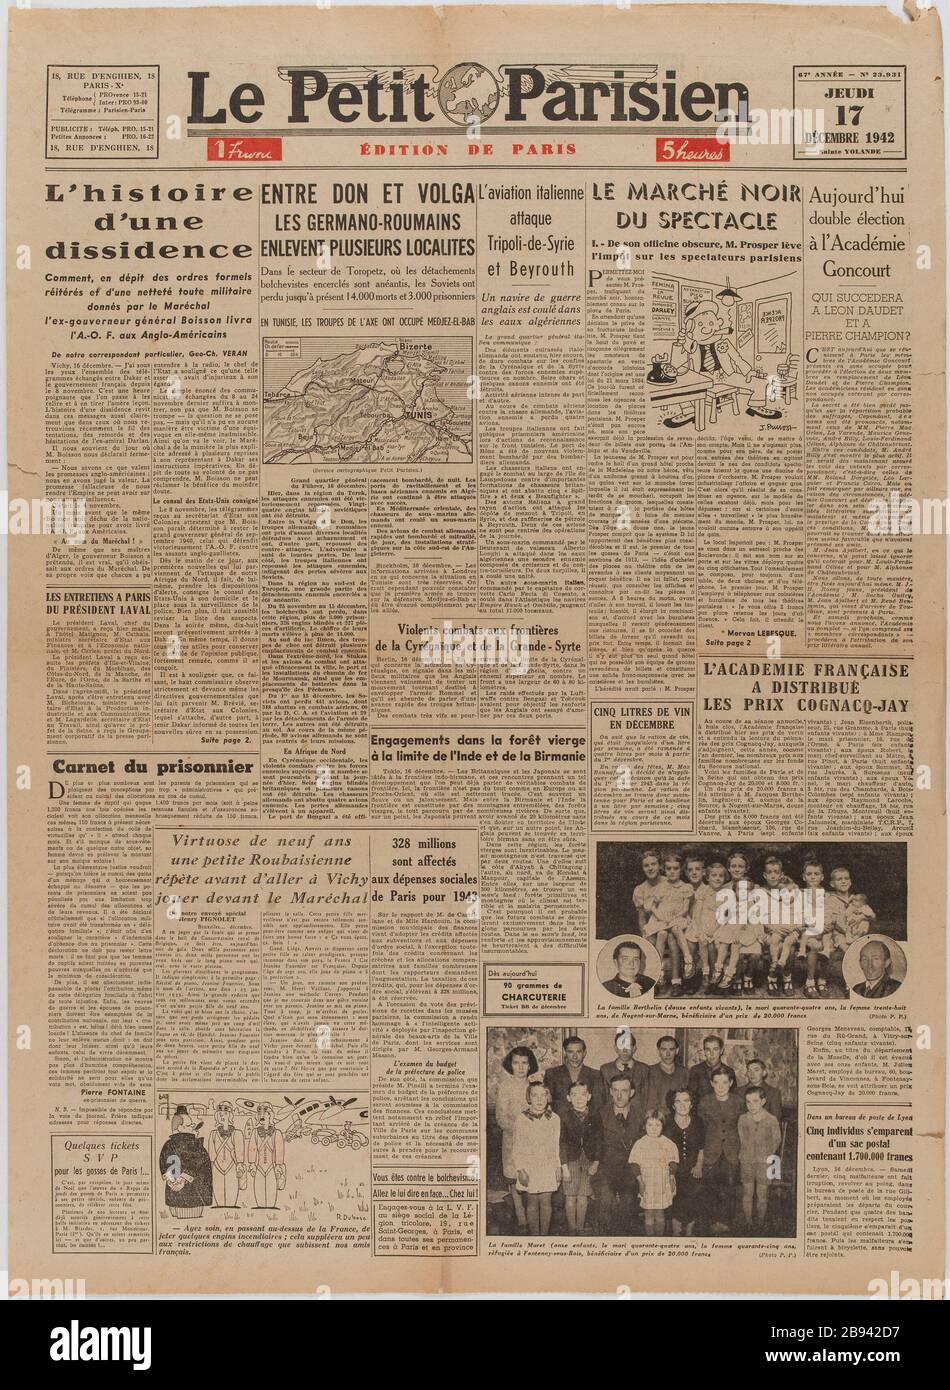 Newspaper "Le Petit Parisien" of December 17, 1942 Journal "Le Petit  Parisien" du 17 décembre 1942.